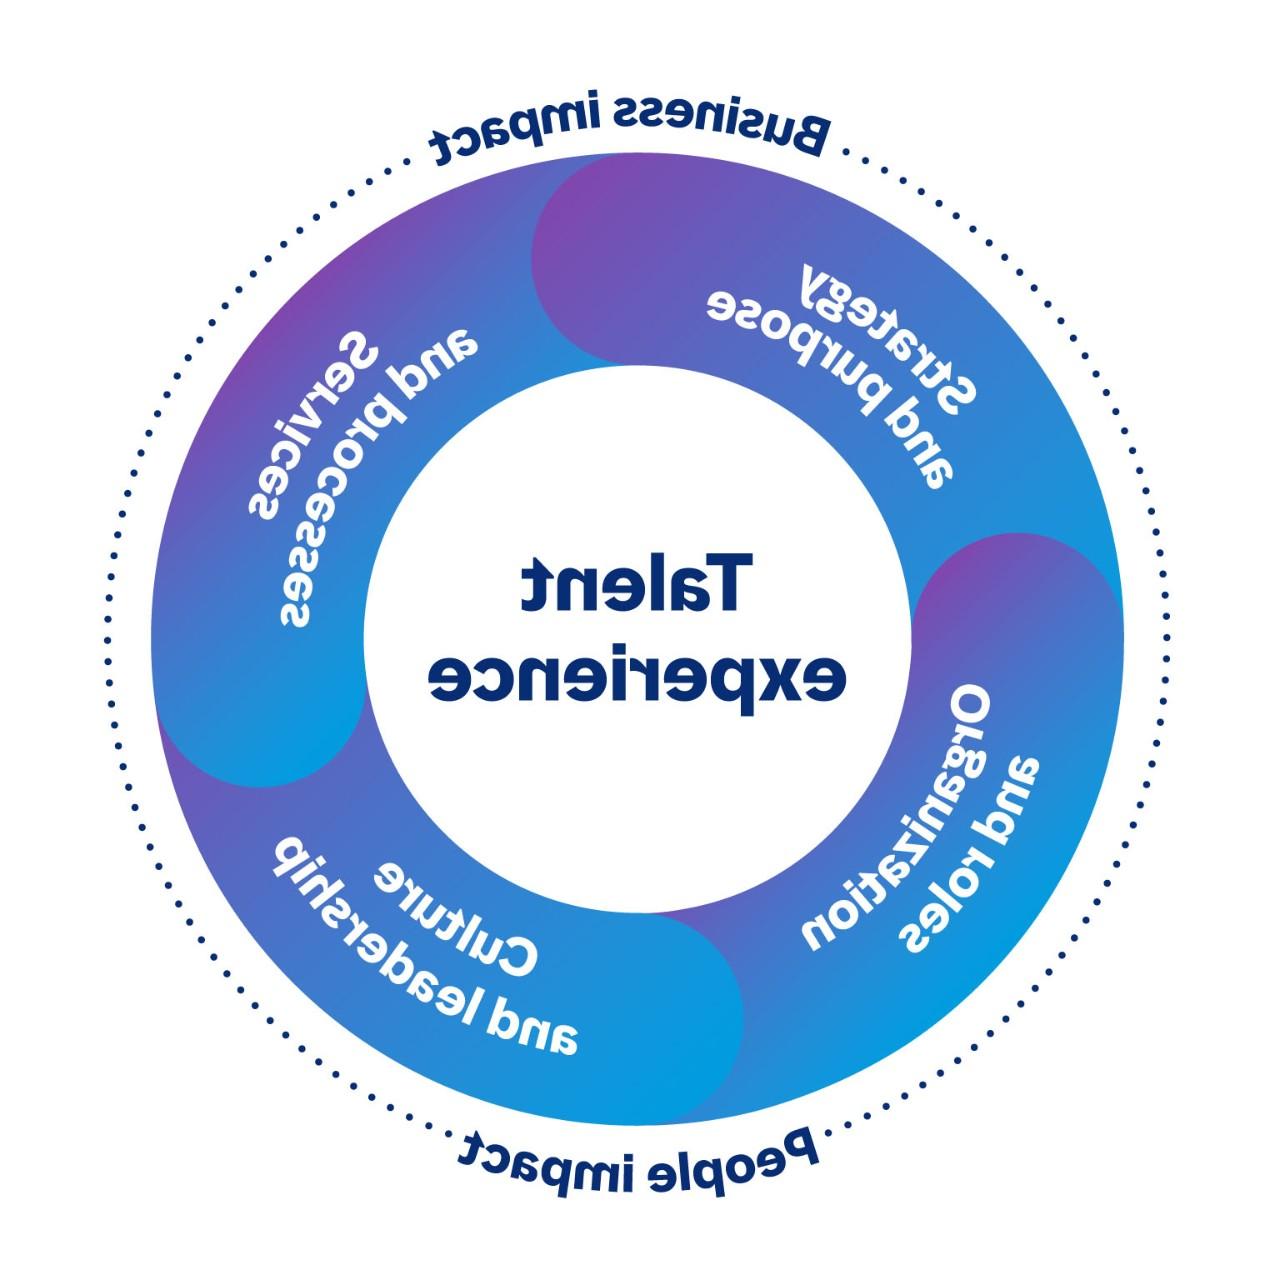 圆形图像显示了对公司和人有影响的人才体验的连接区域. 这四个领域是战略和目标, 服务和流程, 文化与管理, 以及组织和角色.